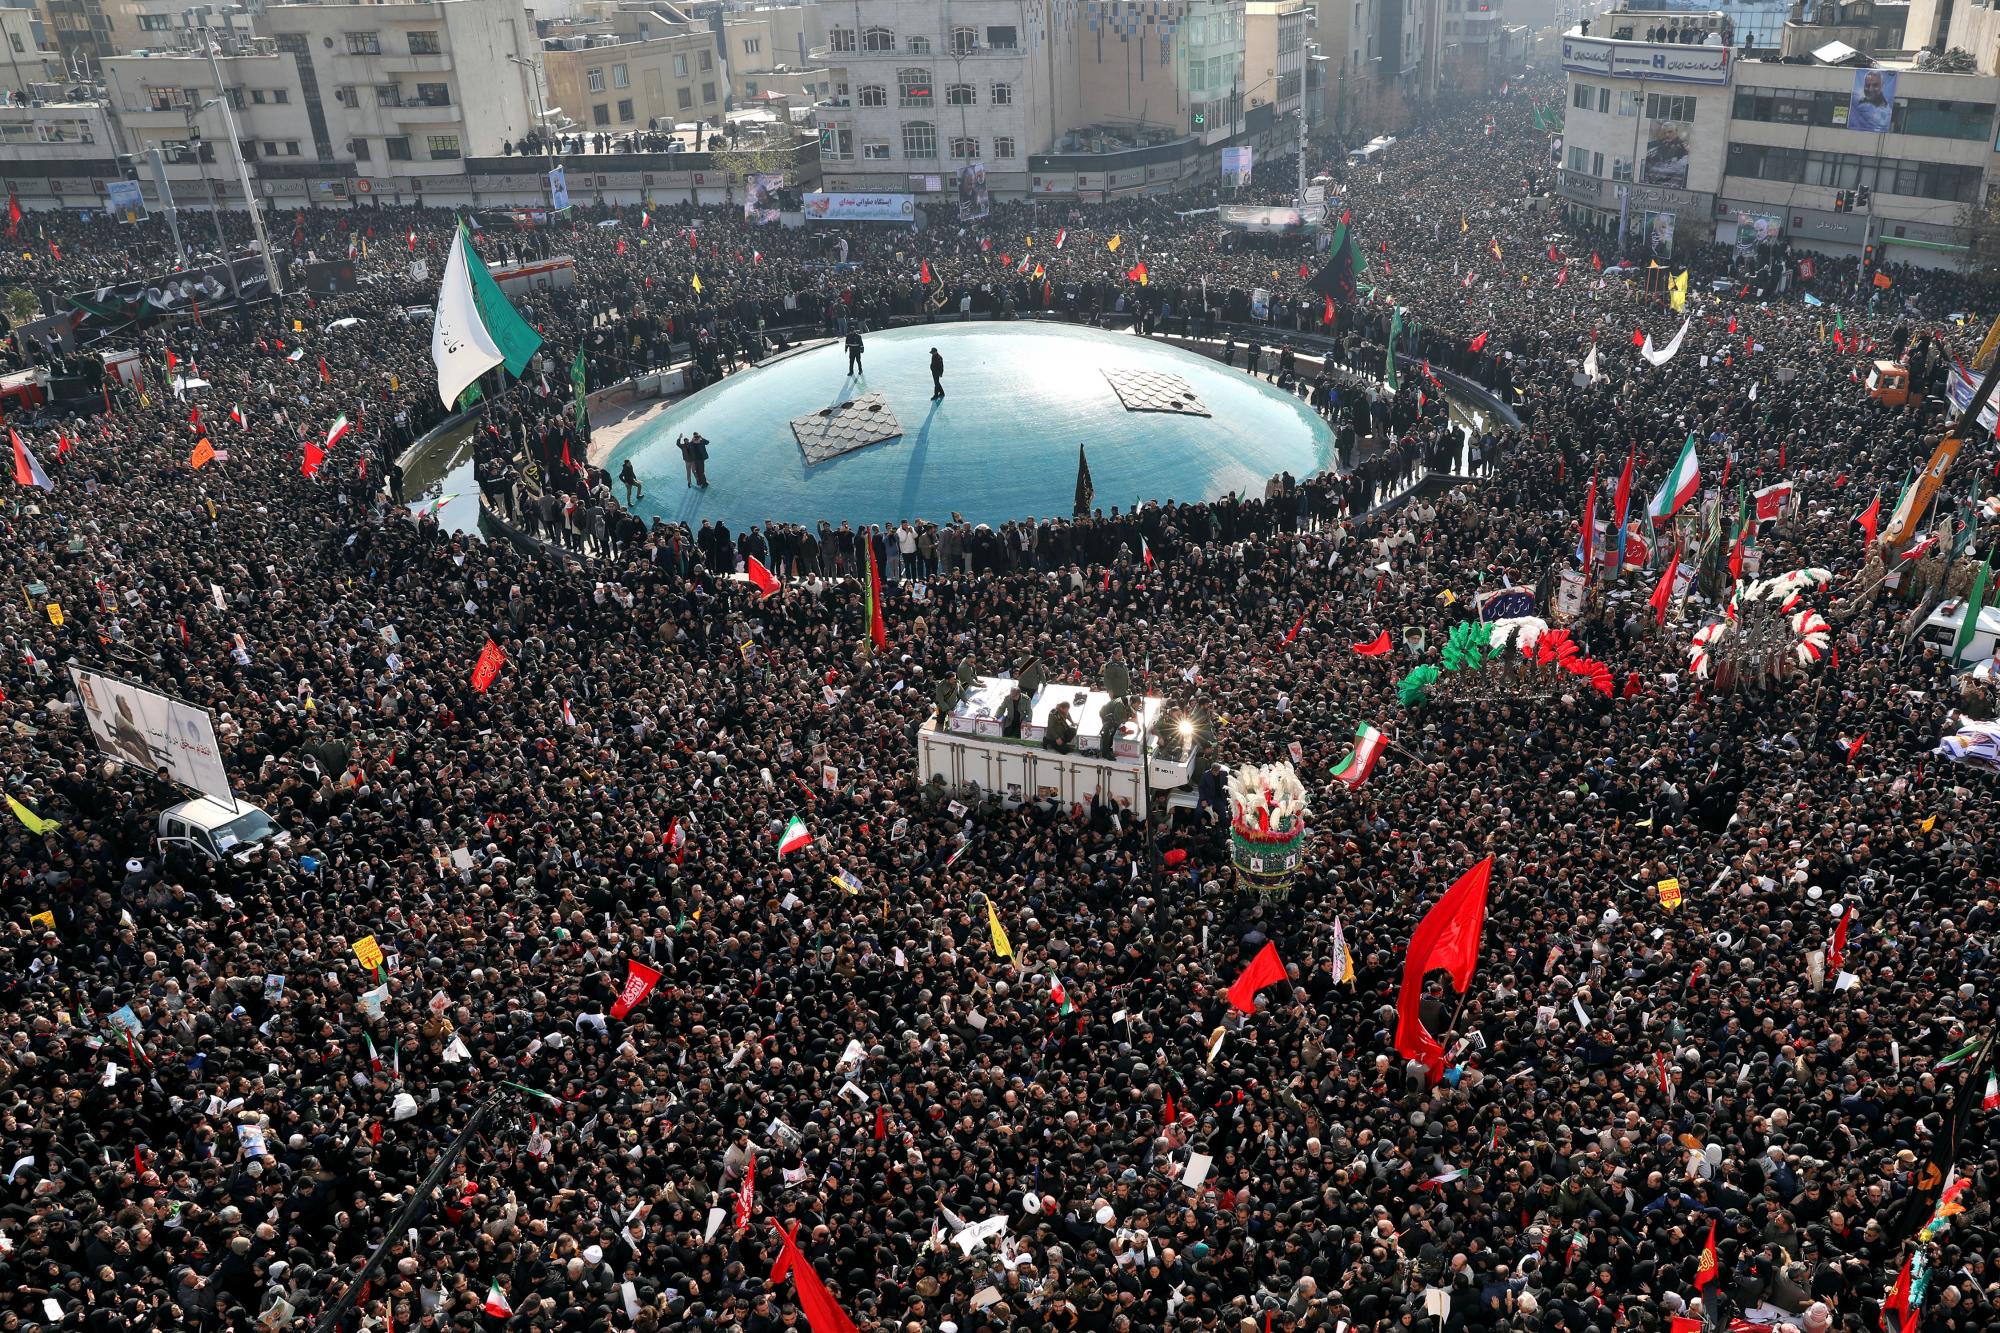 Los ataúdes del general Qassem Soleimani y otros que fueron asesinados en Irak por un ataque con aviones no tripulados estadounidenses, son transportados en un camión rodeado de dolientes durante una procesión fúnebre, en la plaza Enqelab-e-Eslami (Revolución Islámica) en Teherán, Irán, el lunes , 6 de enero de 2020. Las procesiones marcan la primera vez que Irán honra a un hombre soltero con una ceremonia en varias ciudades. Ni siquiera el ayatolá Ruhollah Khomeini, quien fundó la República Islámica, recibió tal procesión con su muerte en 1989. Soleimani permanecerá el lunes en el estado en la famosa mezquita Musalla de Teherán como lo hizo el líder revolucionario antes que él. (Foto AP / Ebrahim Noroozi)